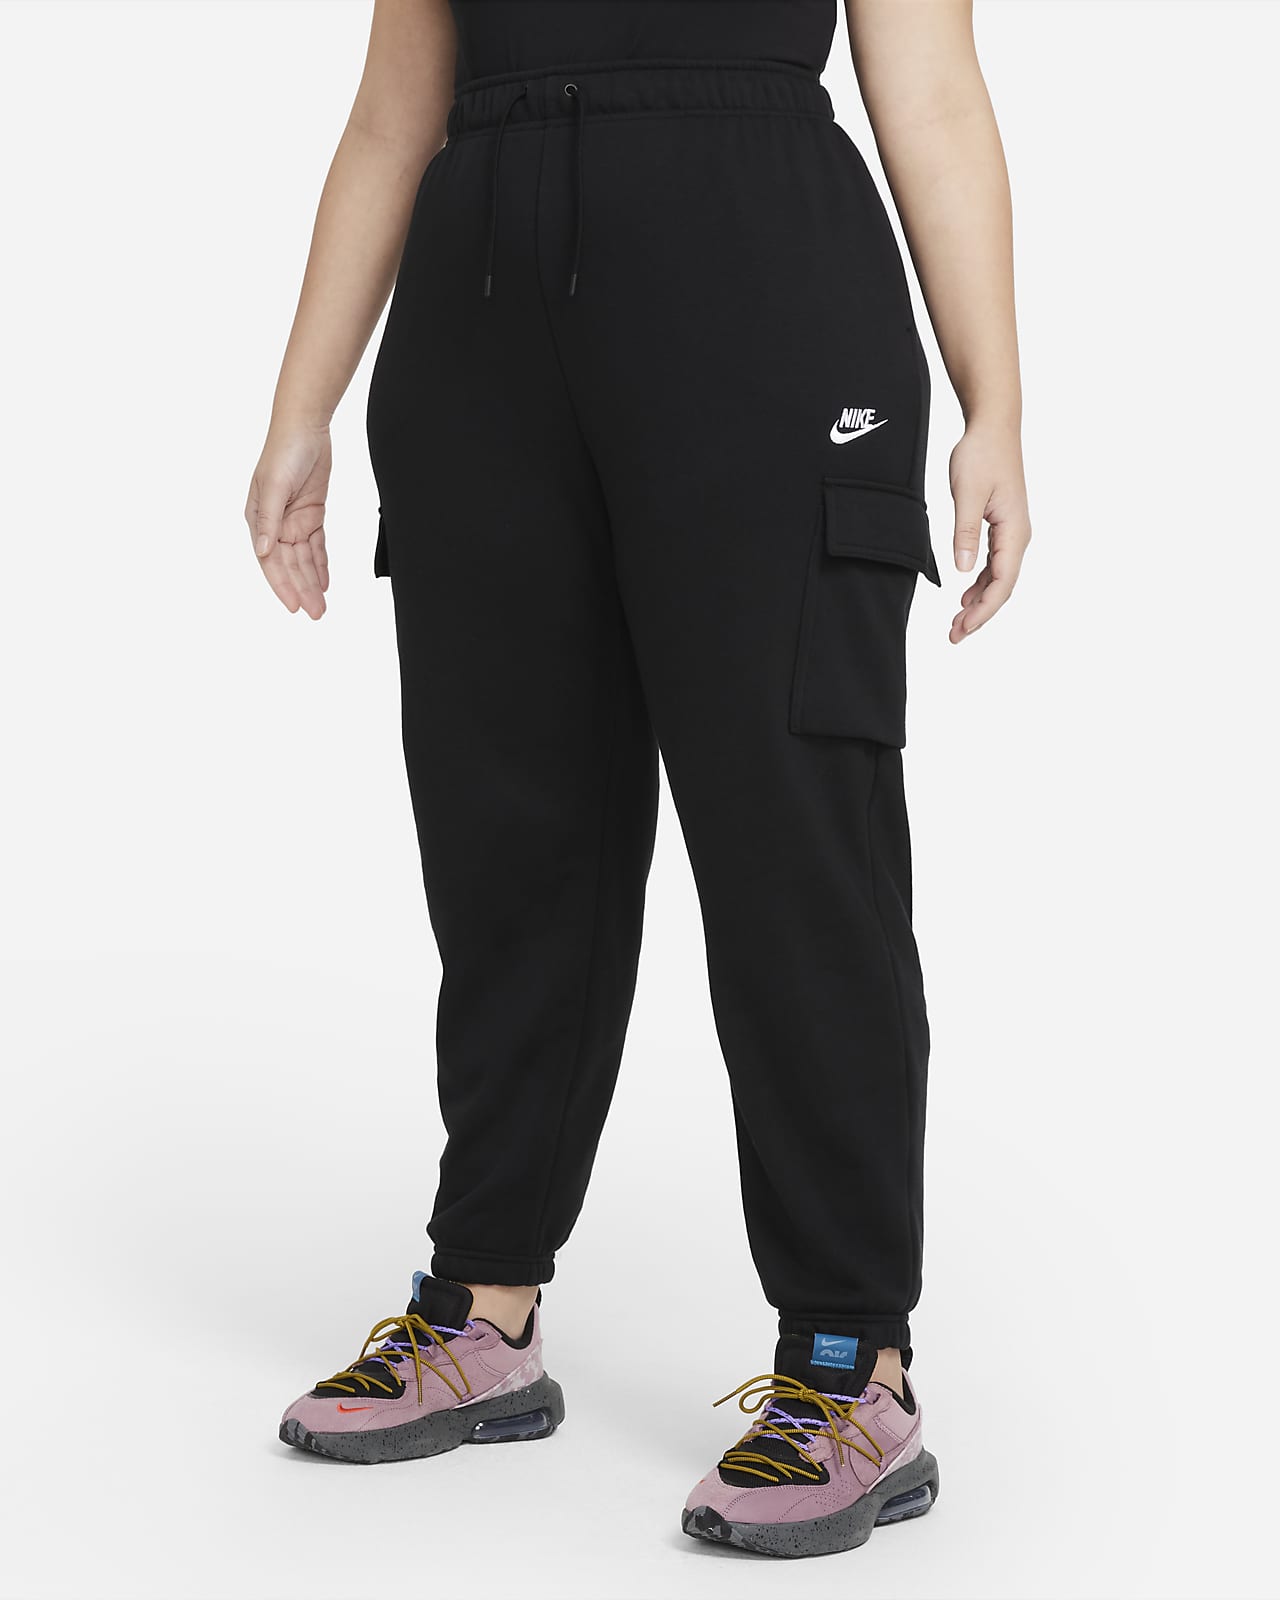 Nike Sportswear Essentials Women's Pants (Plus Size)